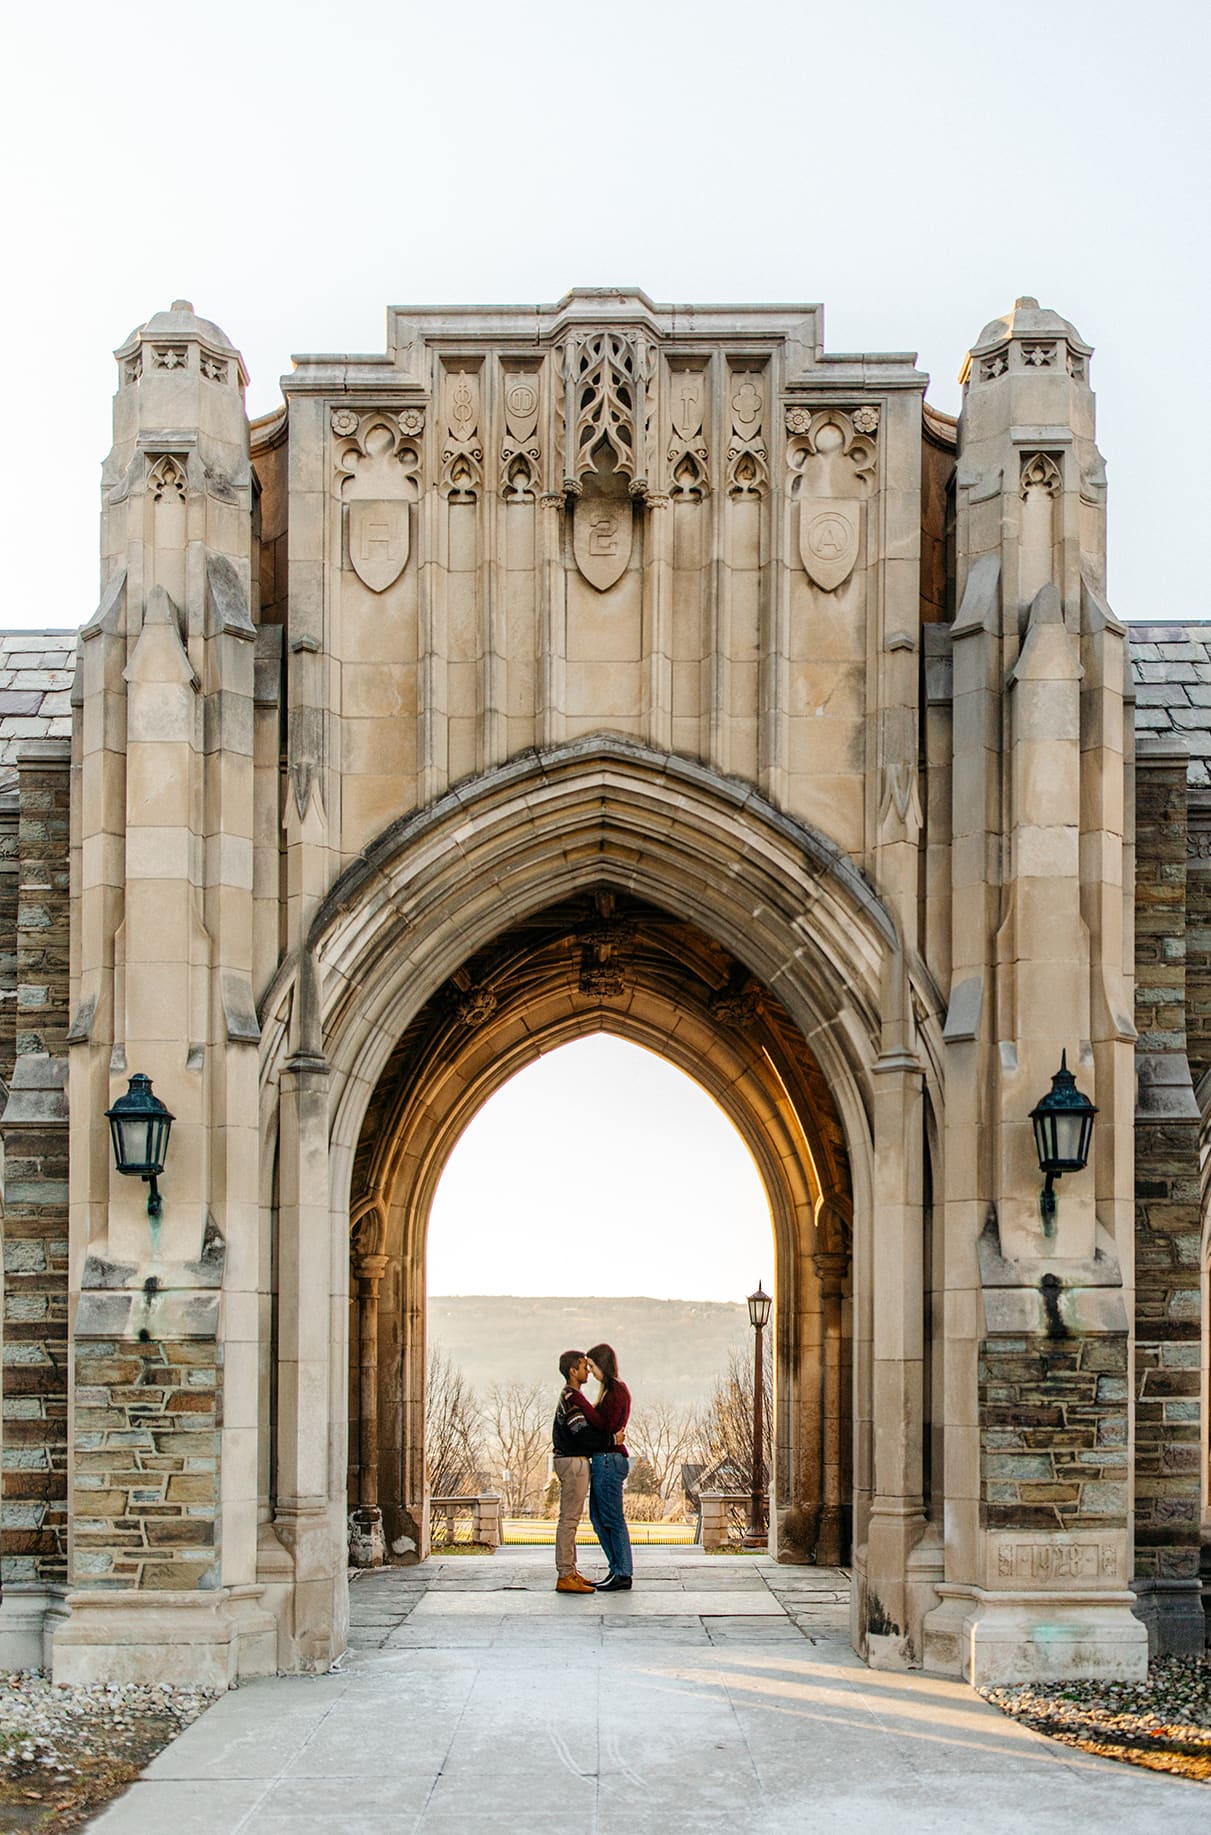 Couple embraces in doorway of the Cornell University War Memorial